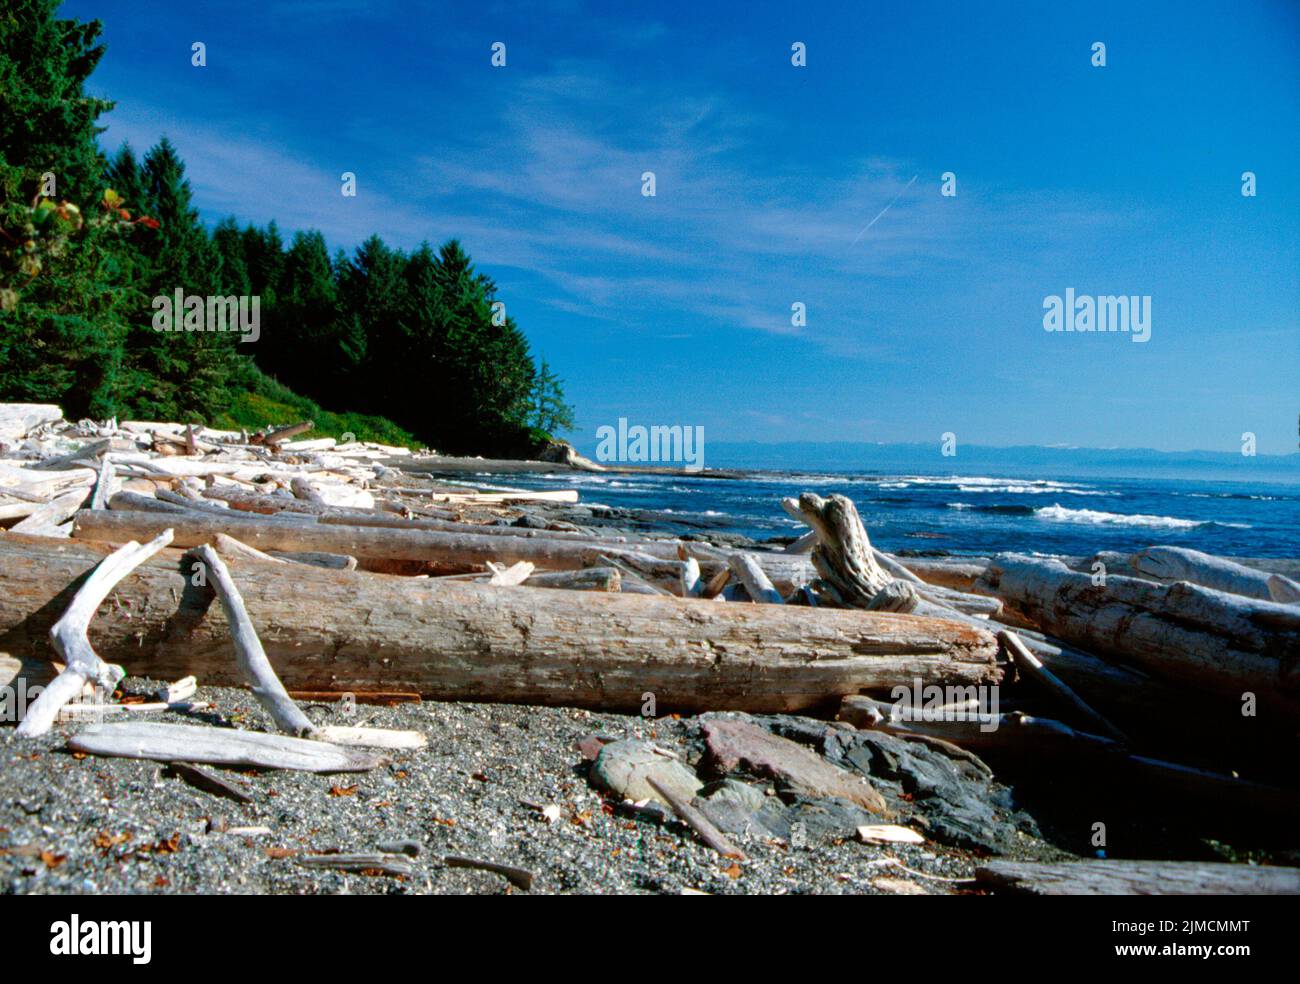 Sea, Ocean, Pacific, West Coast, Vancouver Island, Canada Stock Photo